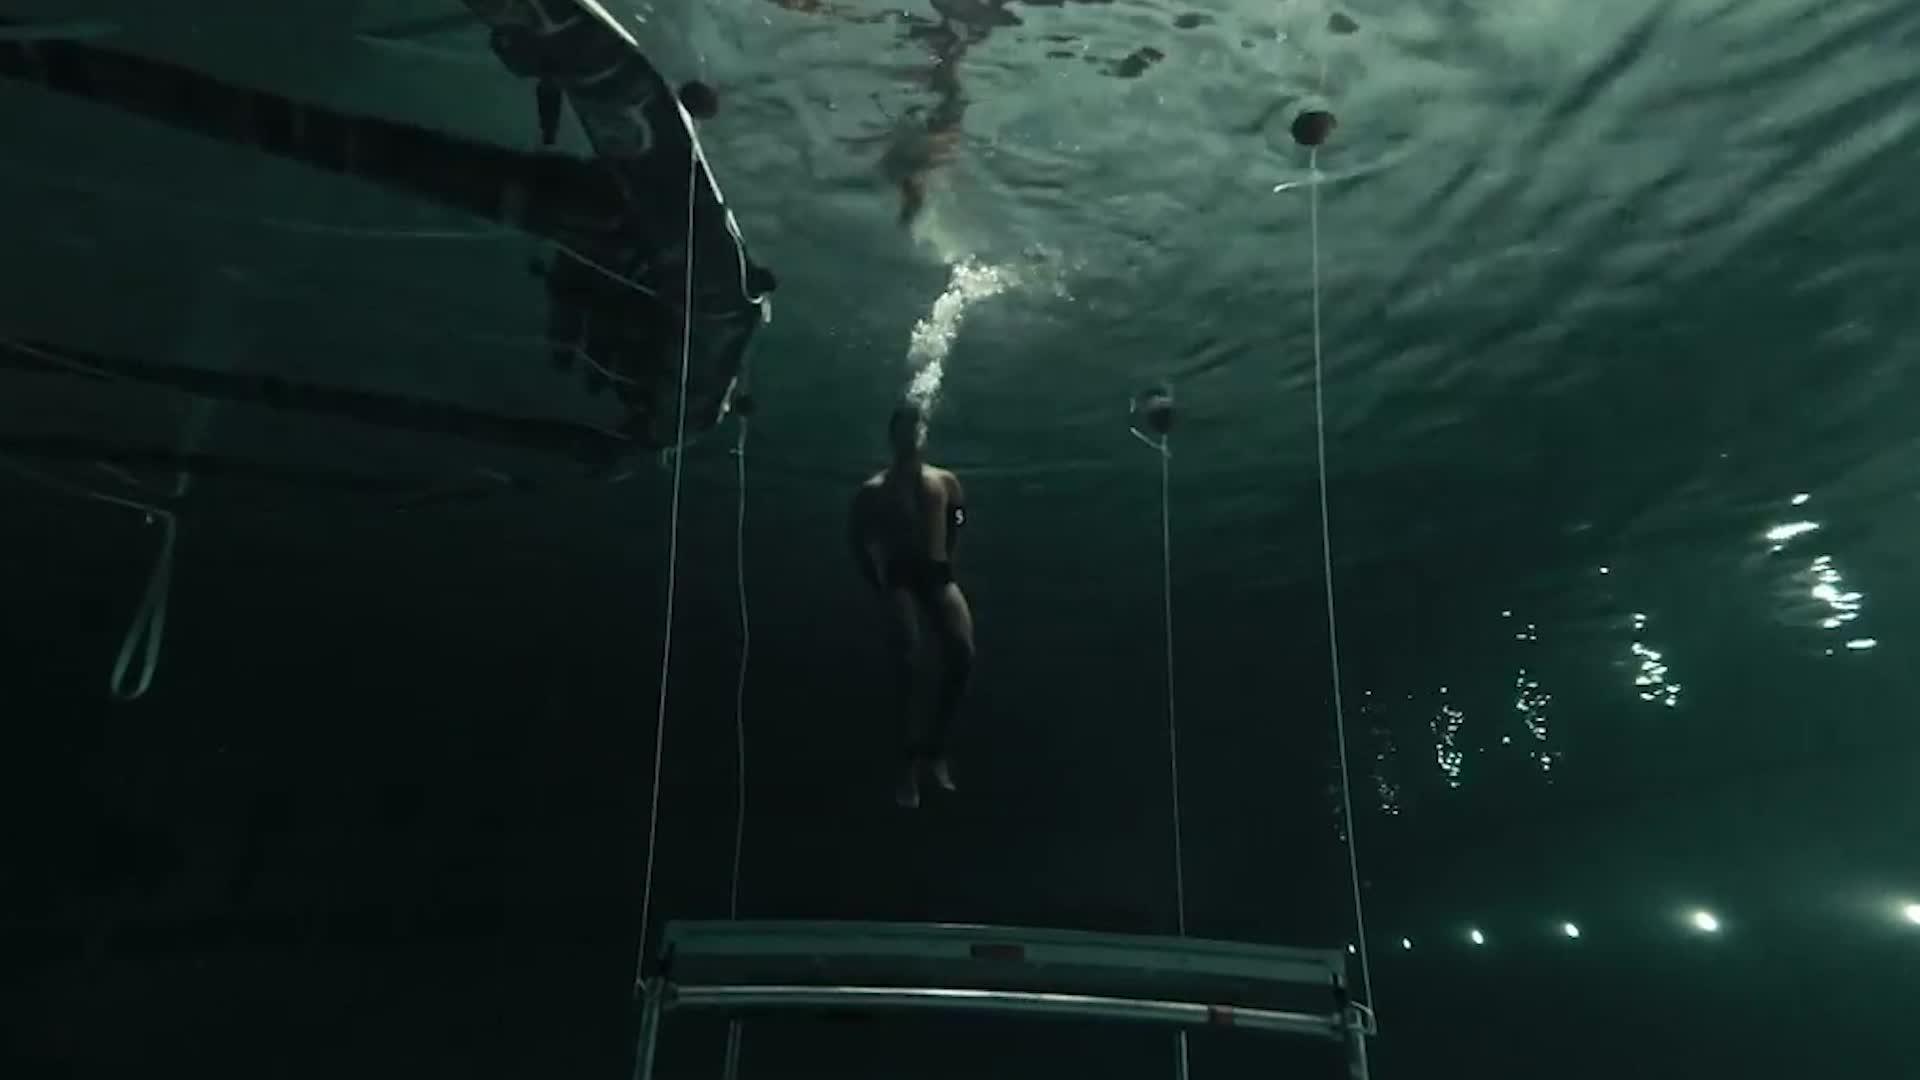 Erikoisjoukot-kokelas ajautuu vaarallisesti vedessä lautan alle – nuoruuden hukkumistrauma lisää tehtävän rankkuutta